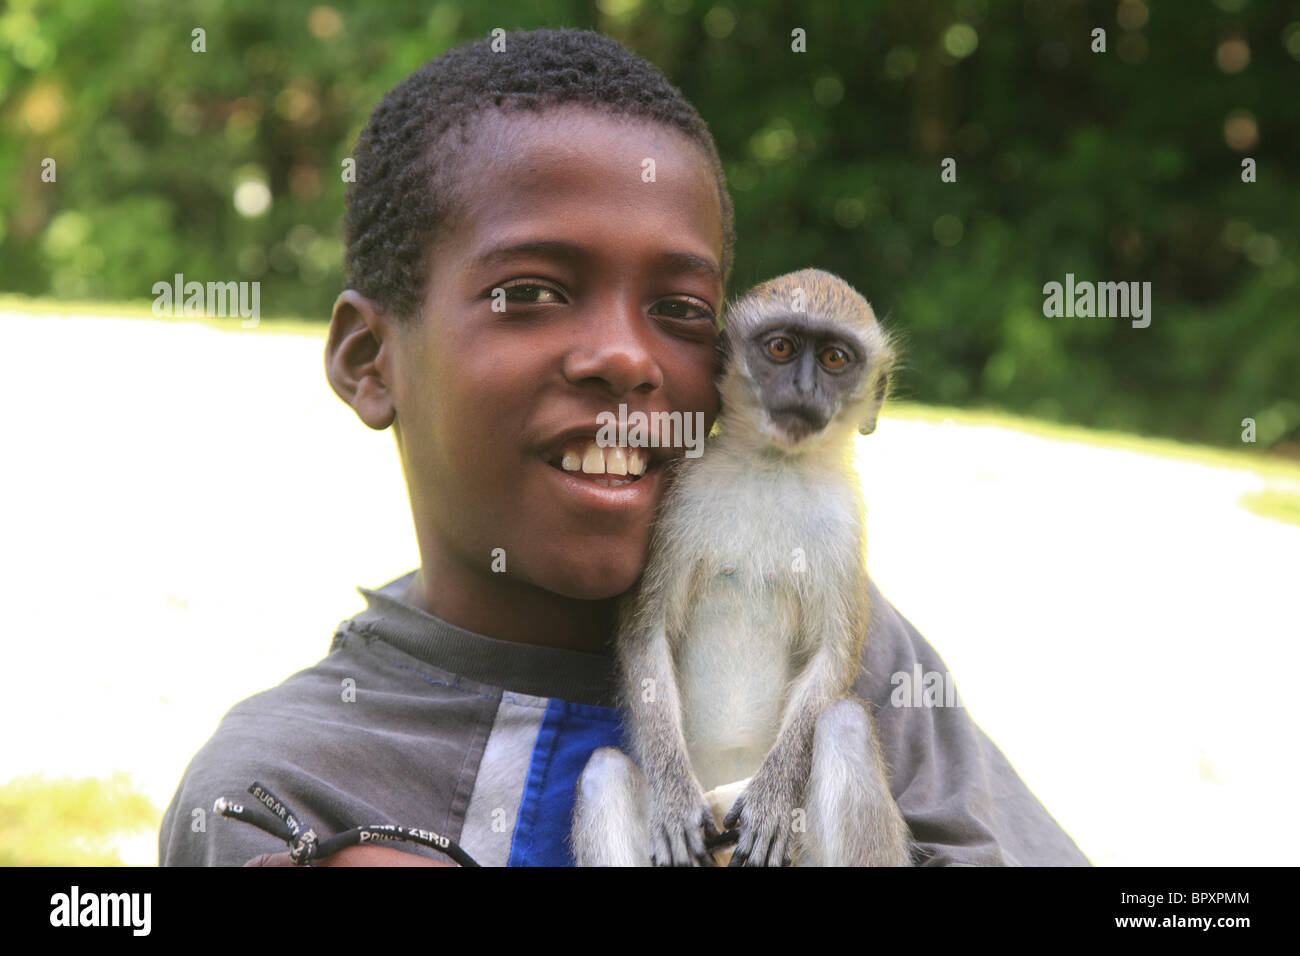 Jeune garçon avec un animal singe dans St.Kitts, Iles sous le vent Caraïbes Banque D'Images